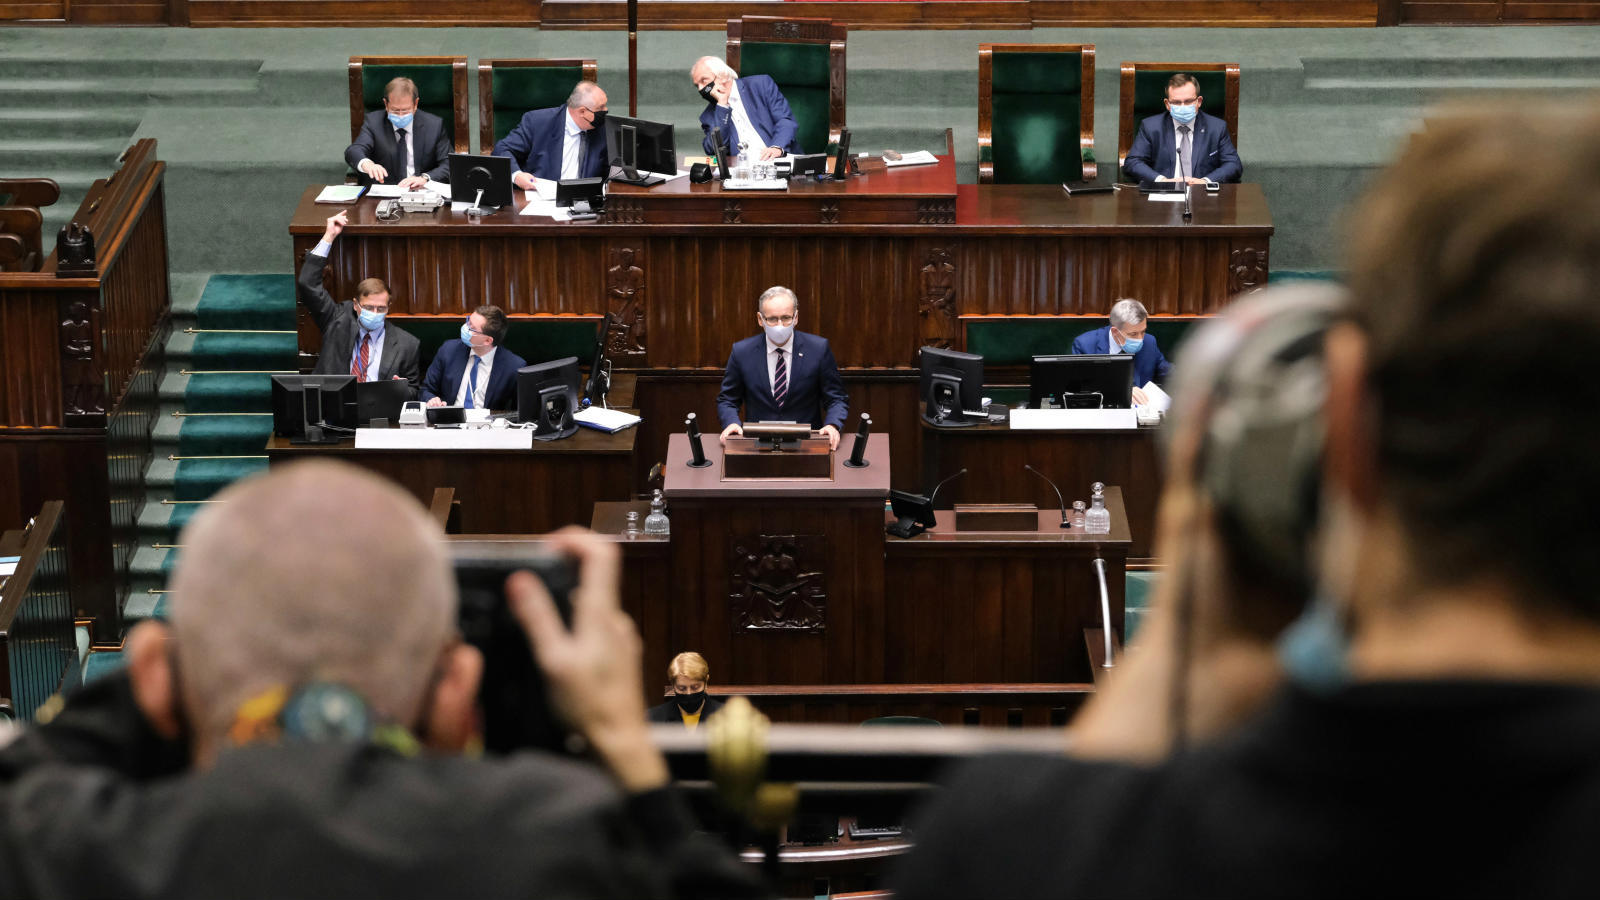 22.10.2020 | Sejm zdecydował w sprawie projektu ustawy covidowej. Większość poprawek opozycji odrzucono